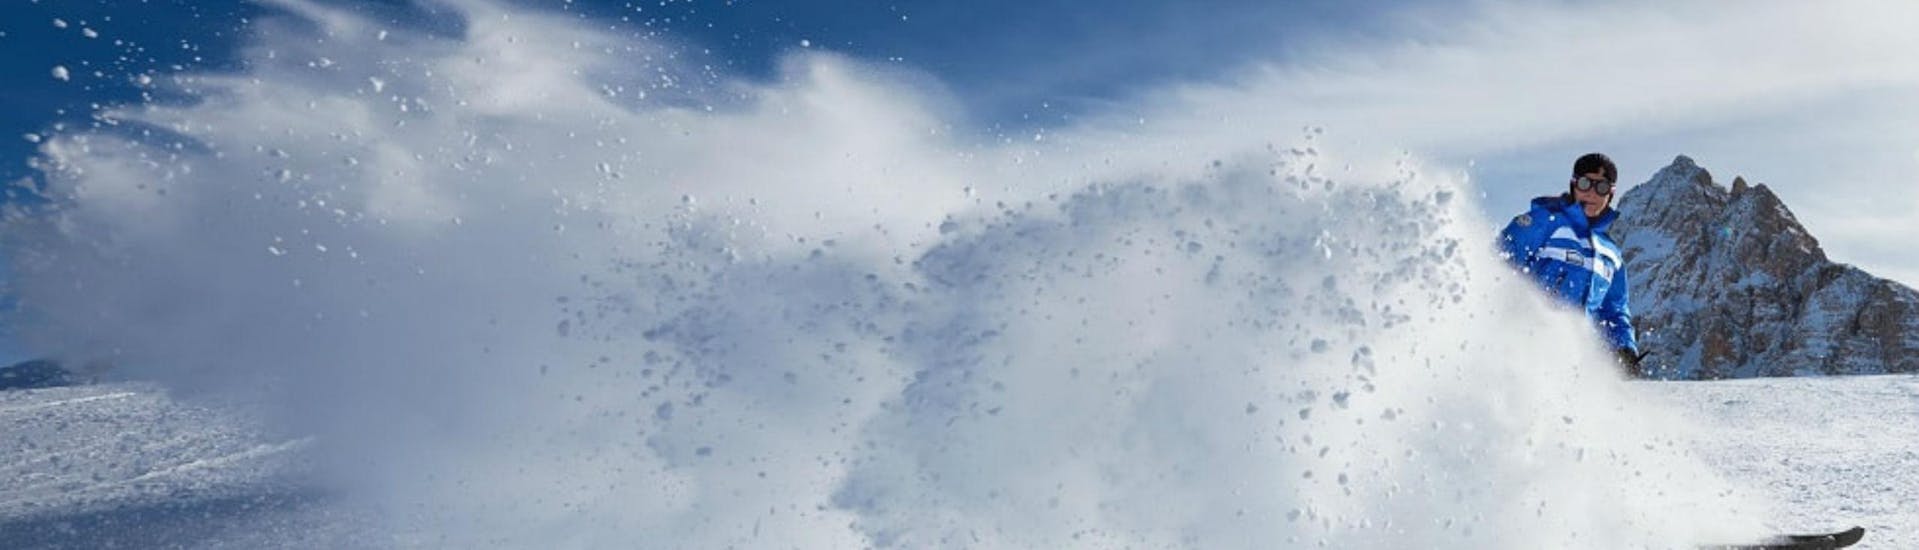 Un maestro di sci della scuola di sci Scuola di Sci Azzurra Cortina sta sciando lasciando una scia di neve bianca dietro di sé su una delle piste del comprensorio sciistico di Cortina d'Ampezzo, dove si tengono le lezioni di sci.